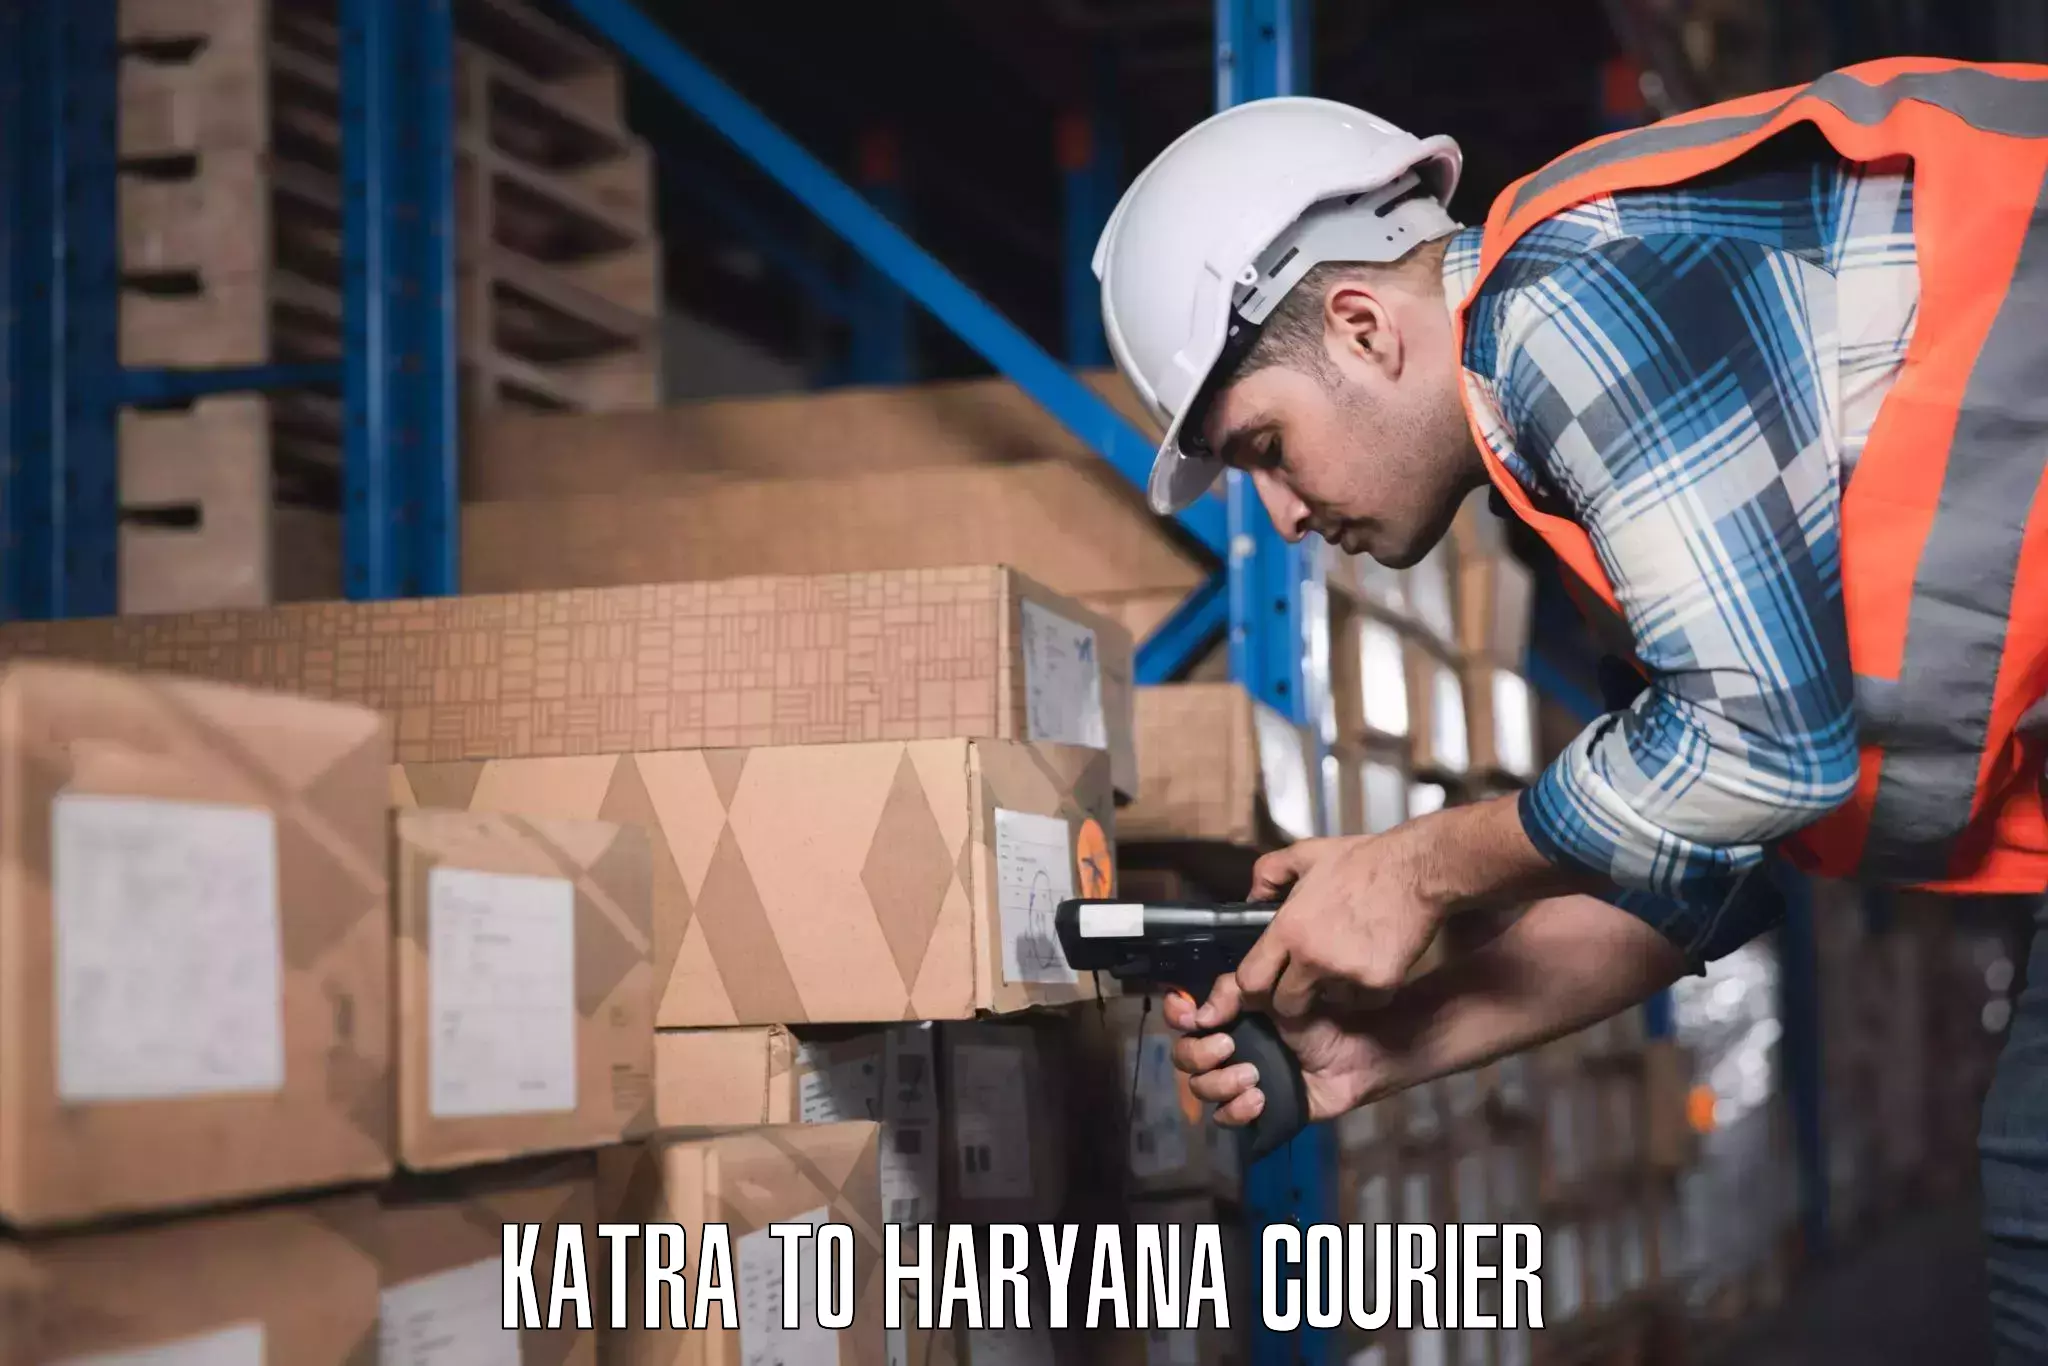 Door-to-door baggage service Katra to Haryana